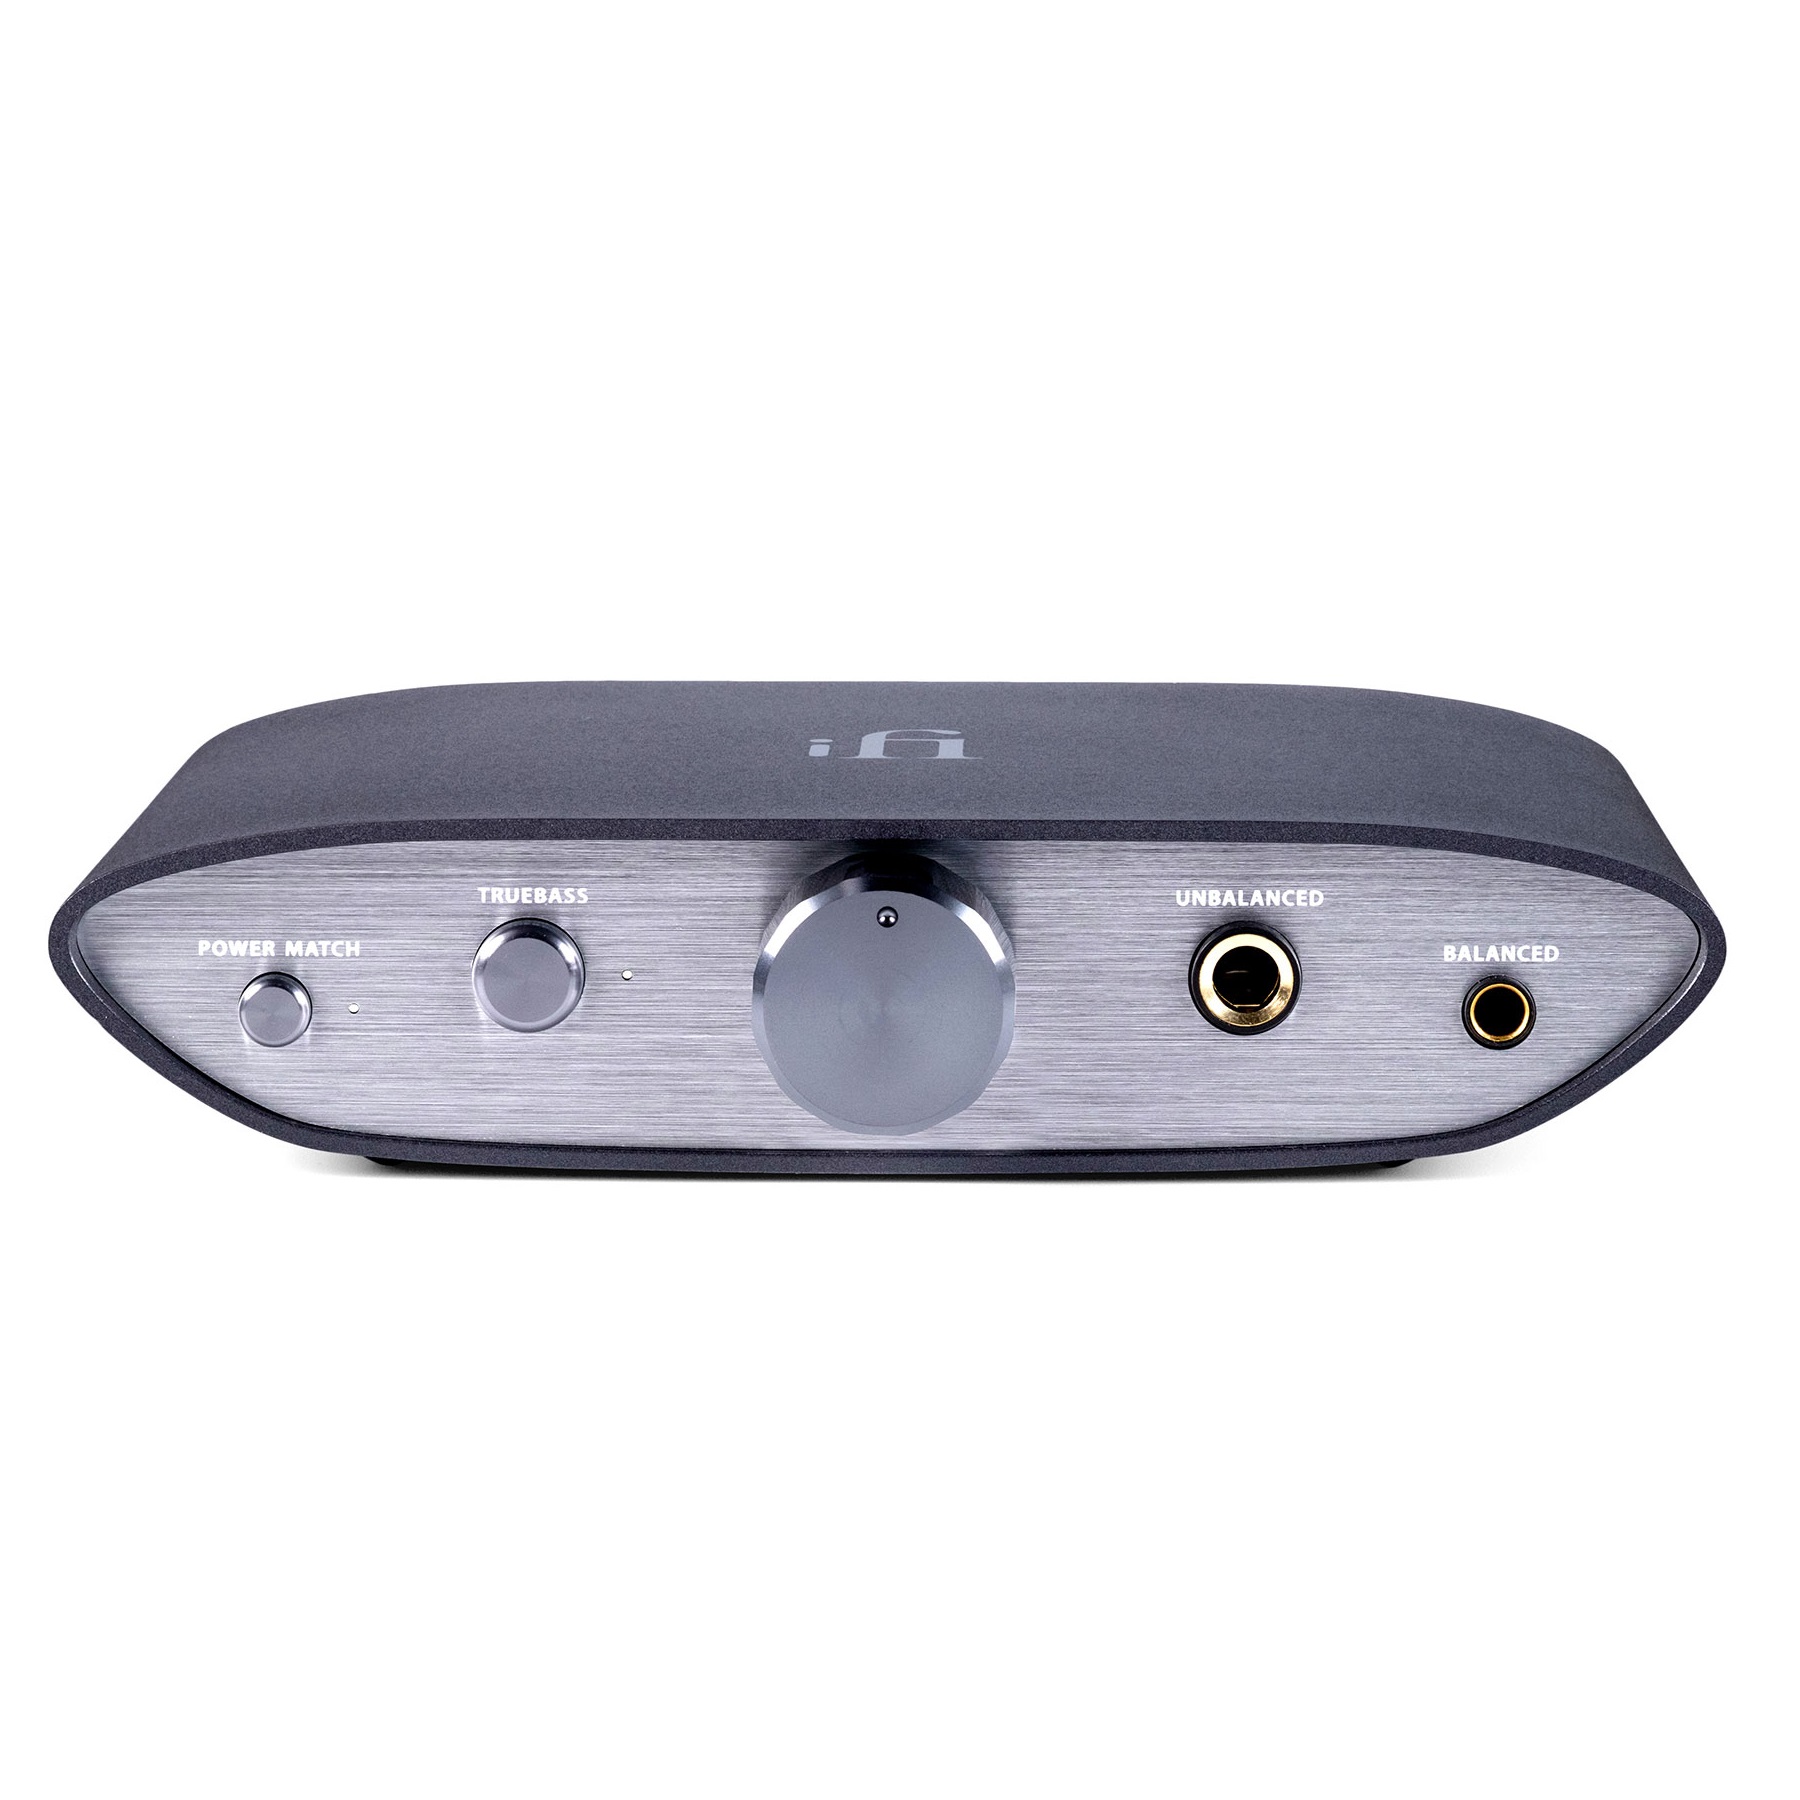 Усилители с ЦАП для наушников iFi Audio Zen DAC V2